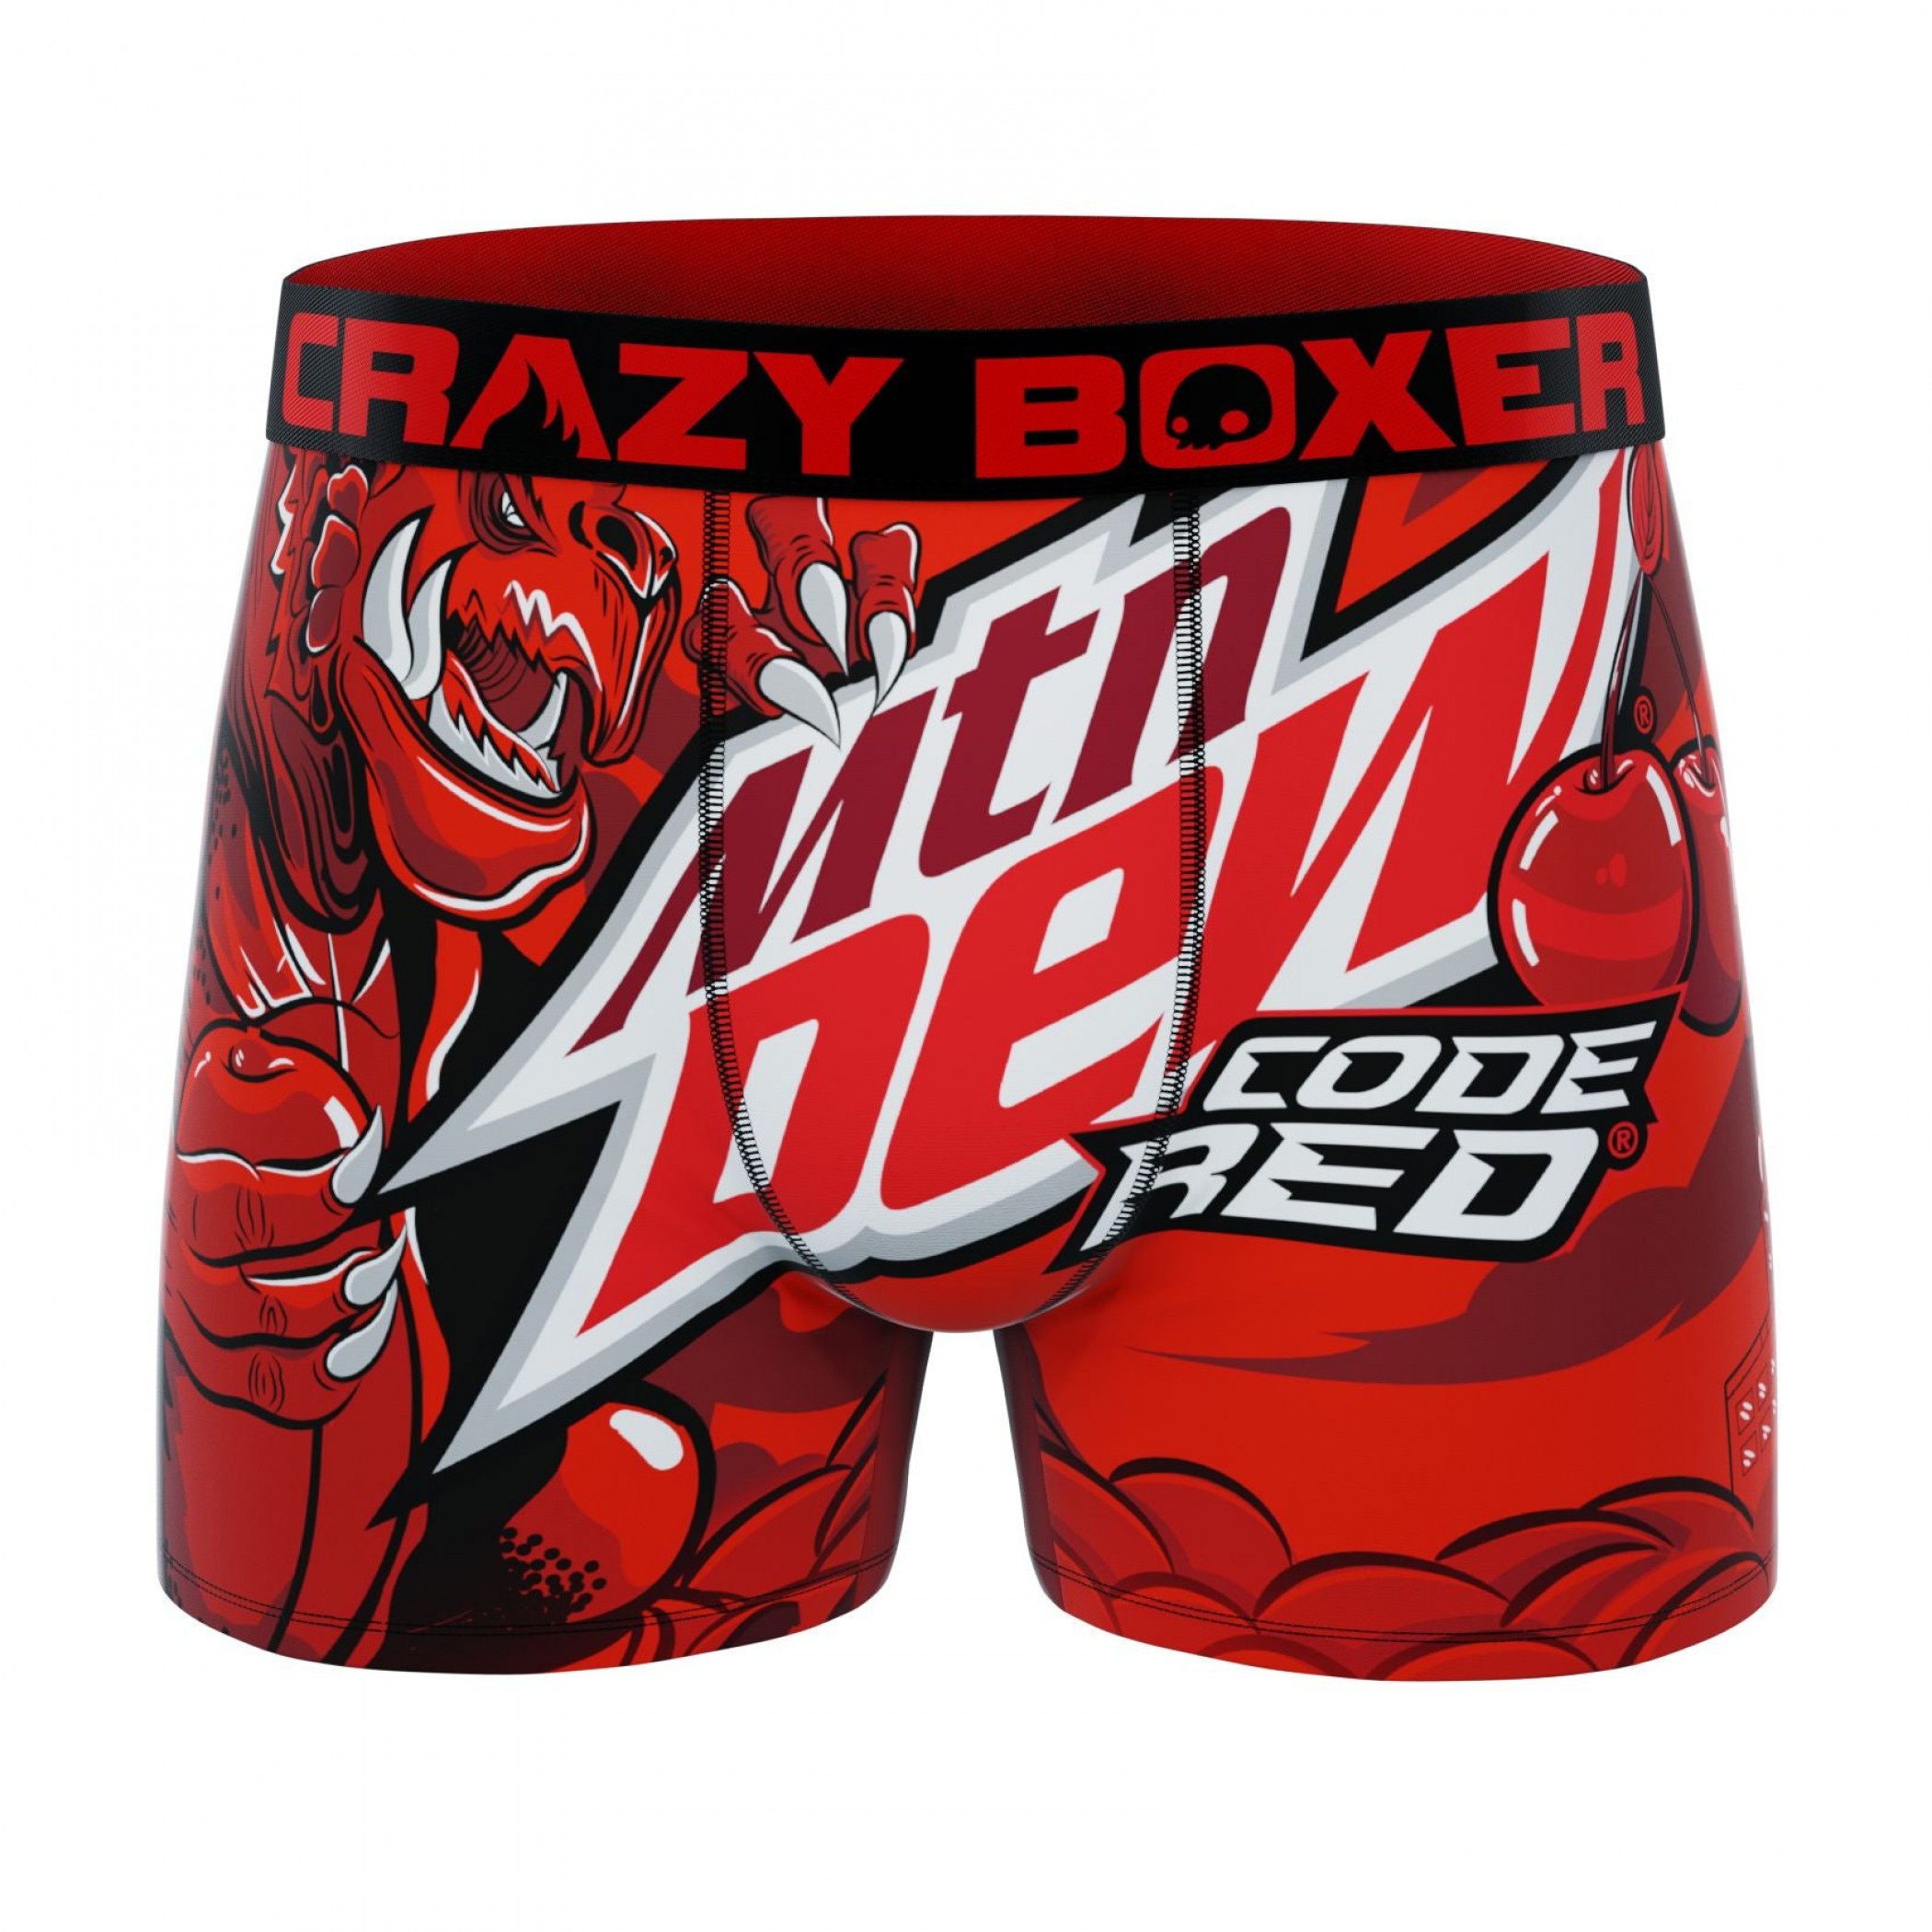 Crazy boxers